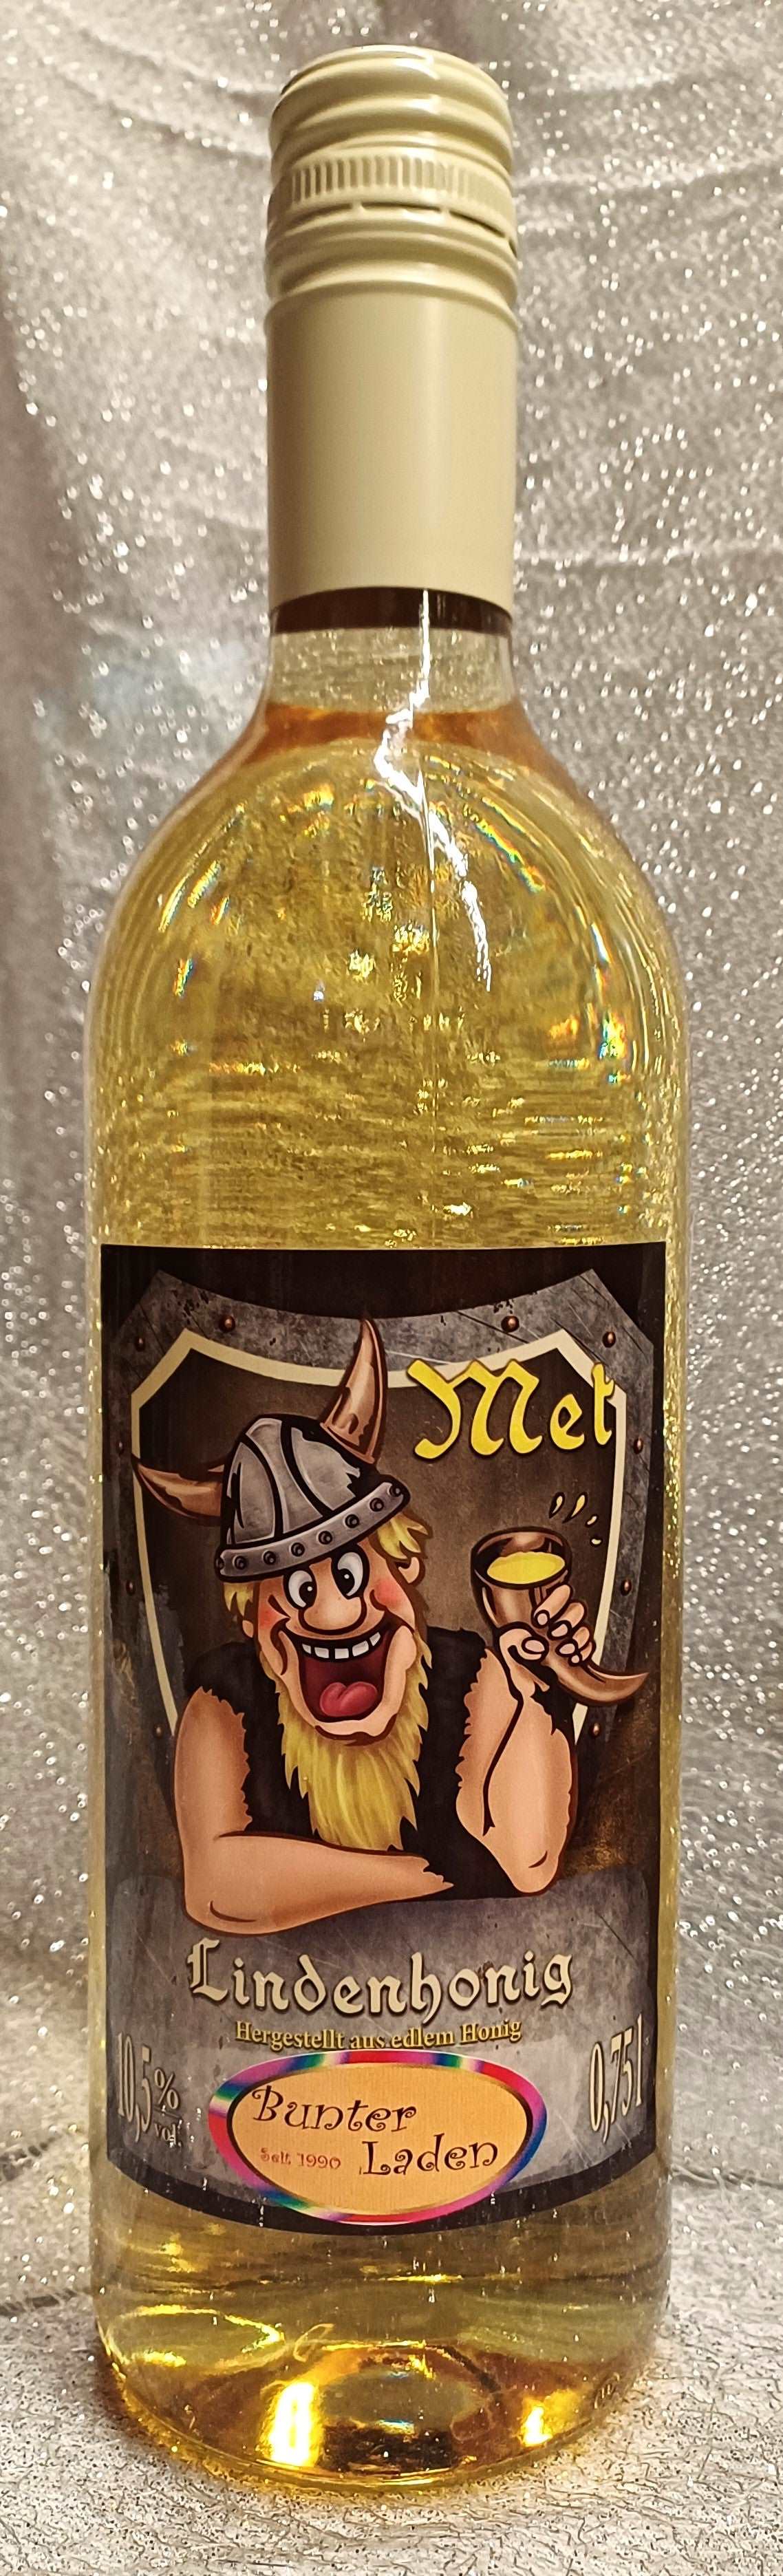 Honigwein-Met, der Trank der Götter, 0,75l